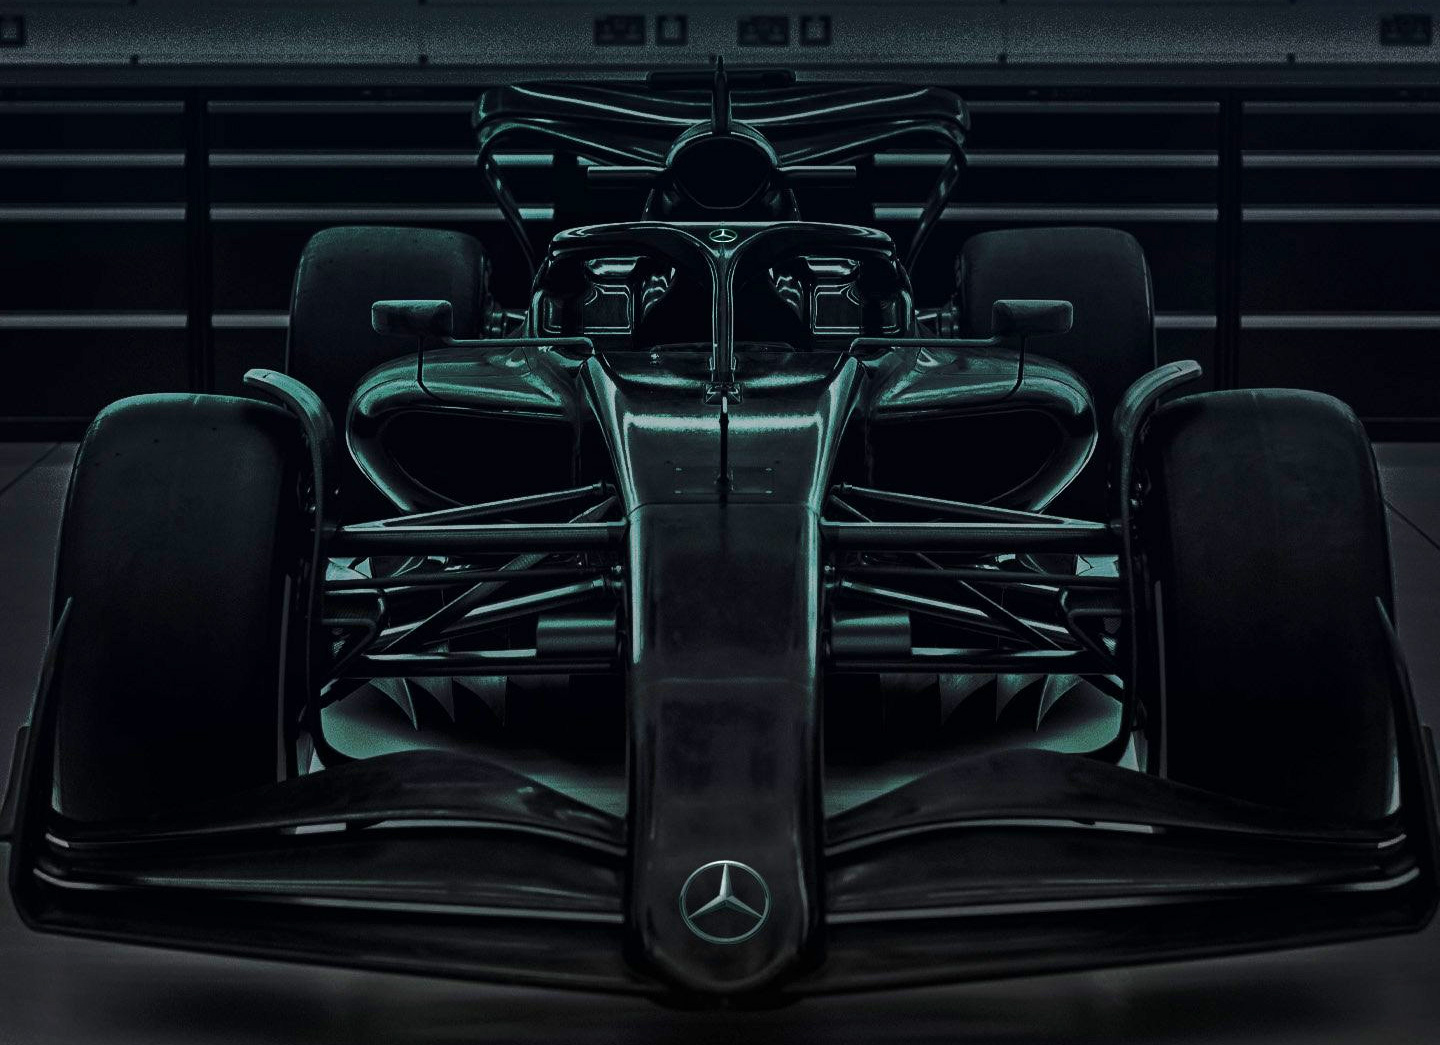 Mercedes 2022 car teaser image